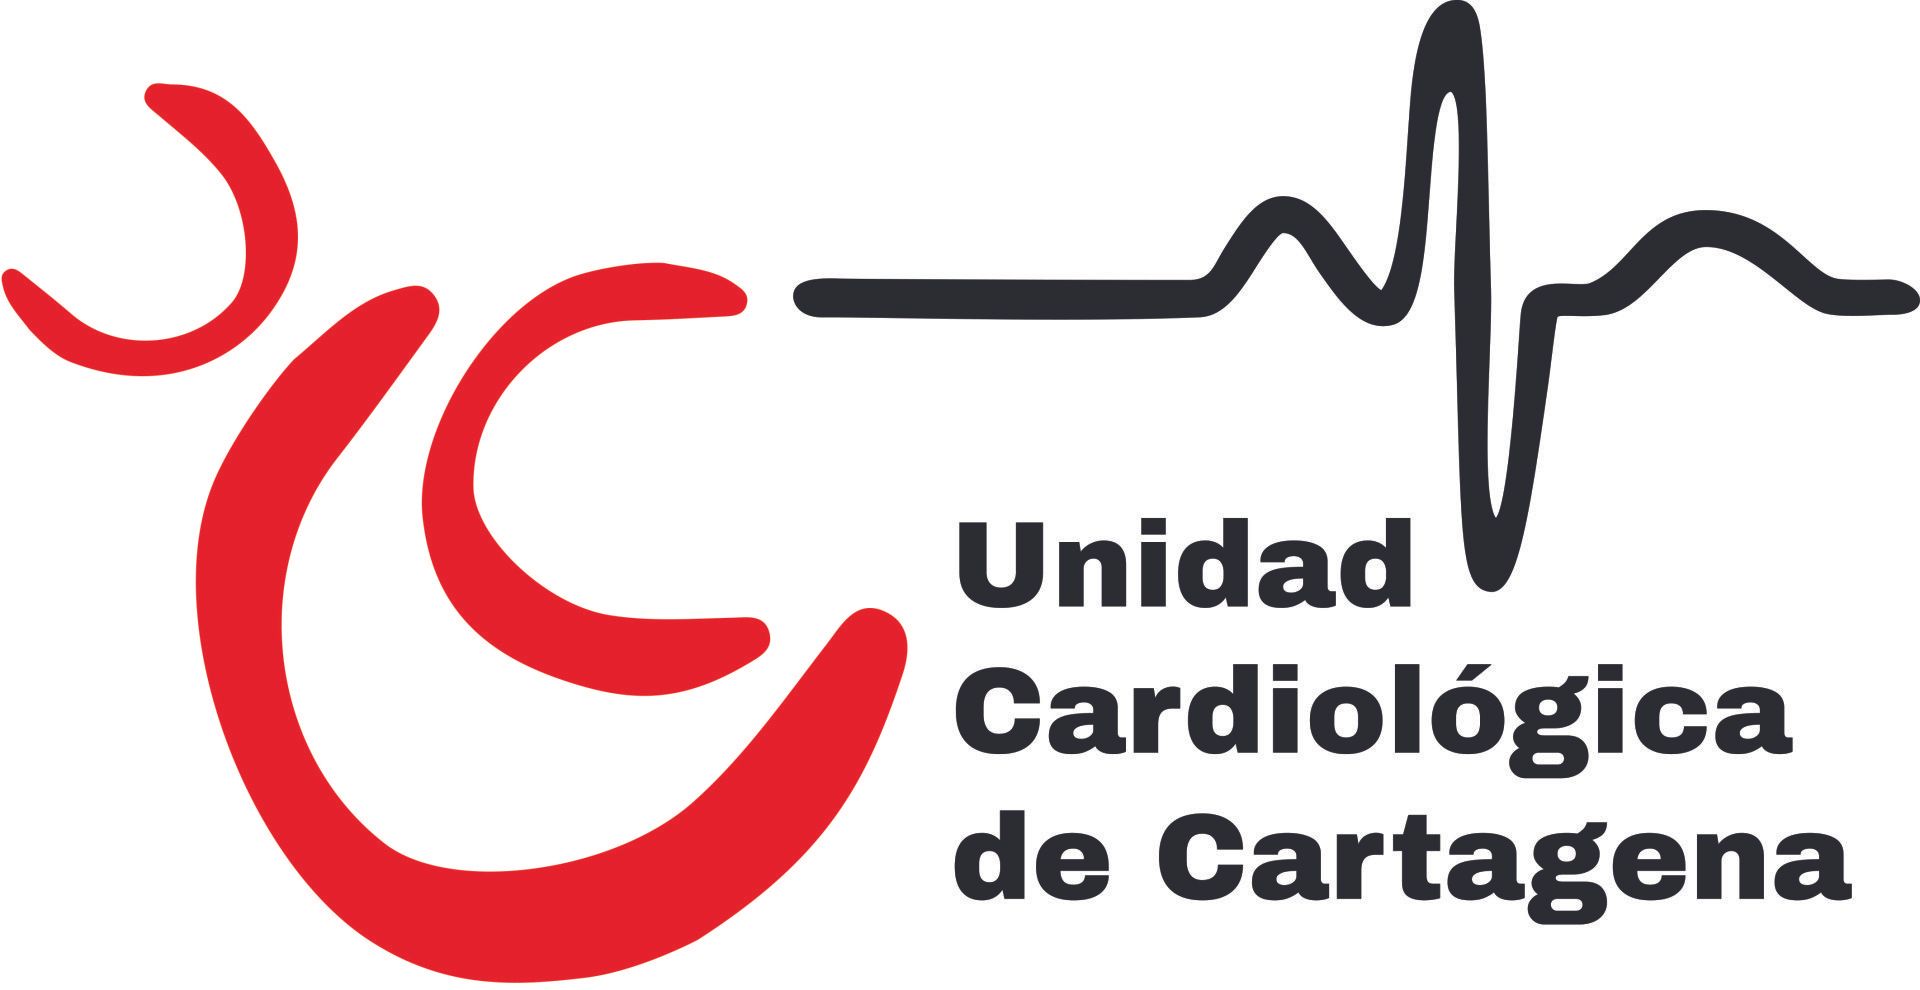 Unidad Cardiológica de Cartagena Ltda